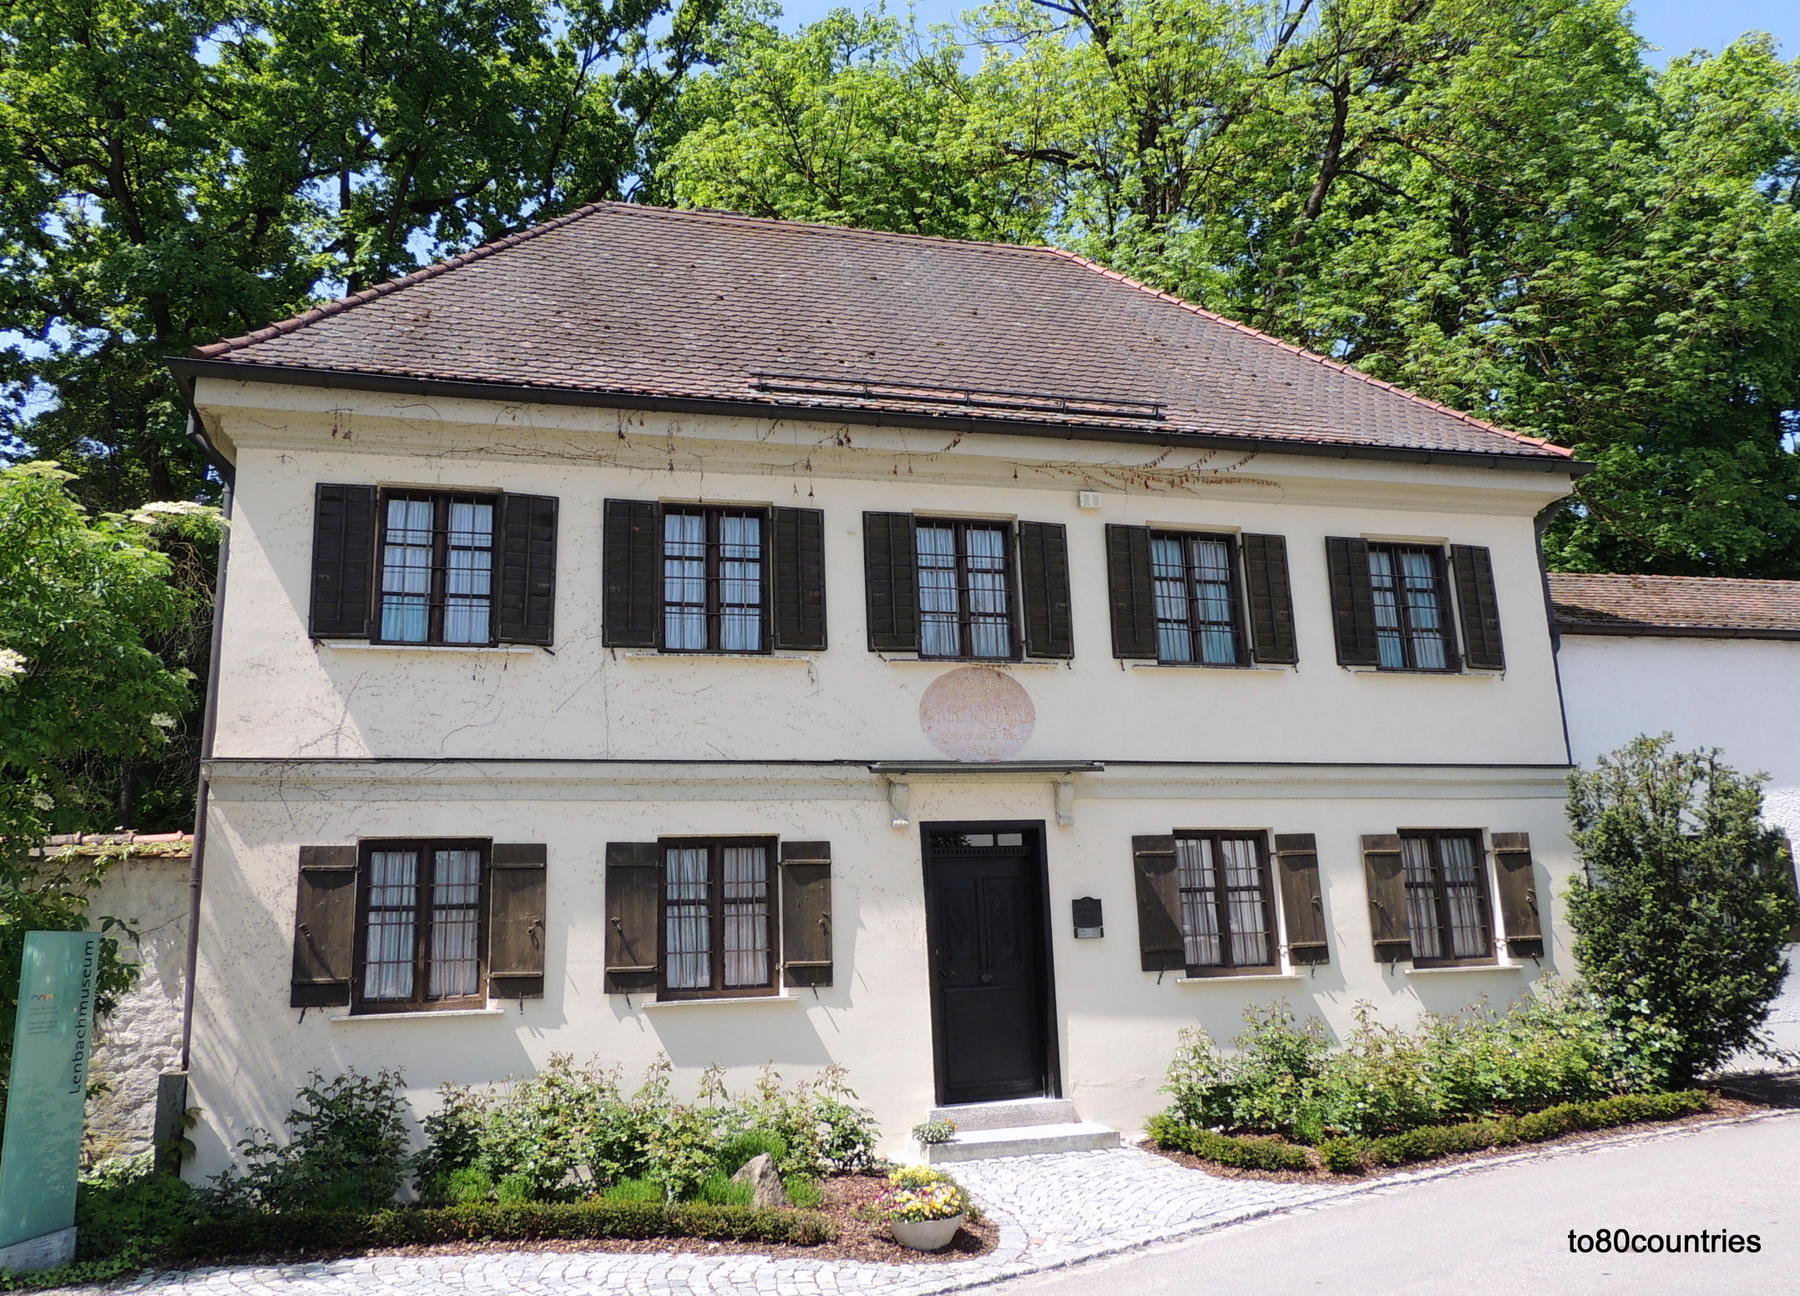 Lenbachmuseum Schrobenhausen